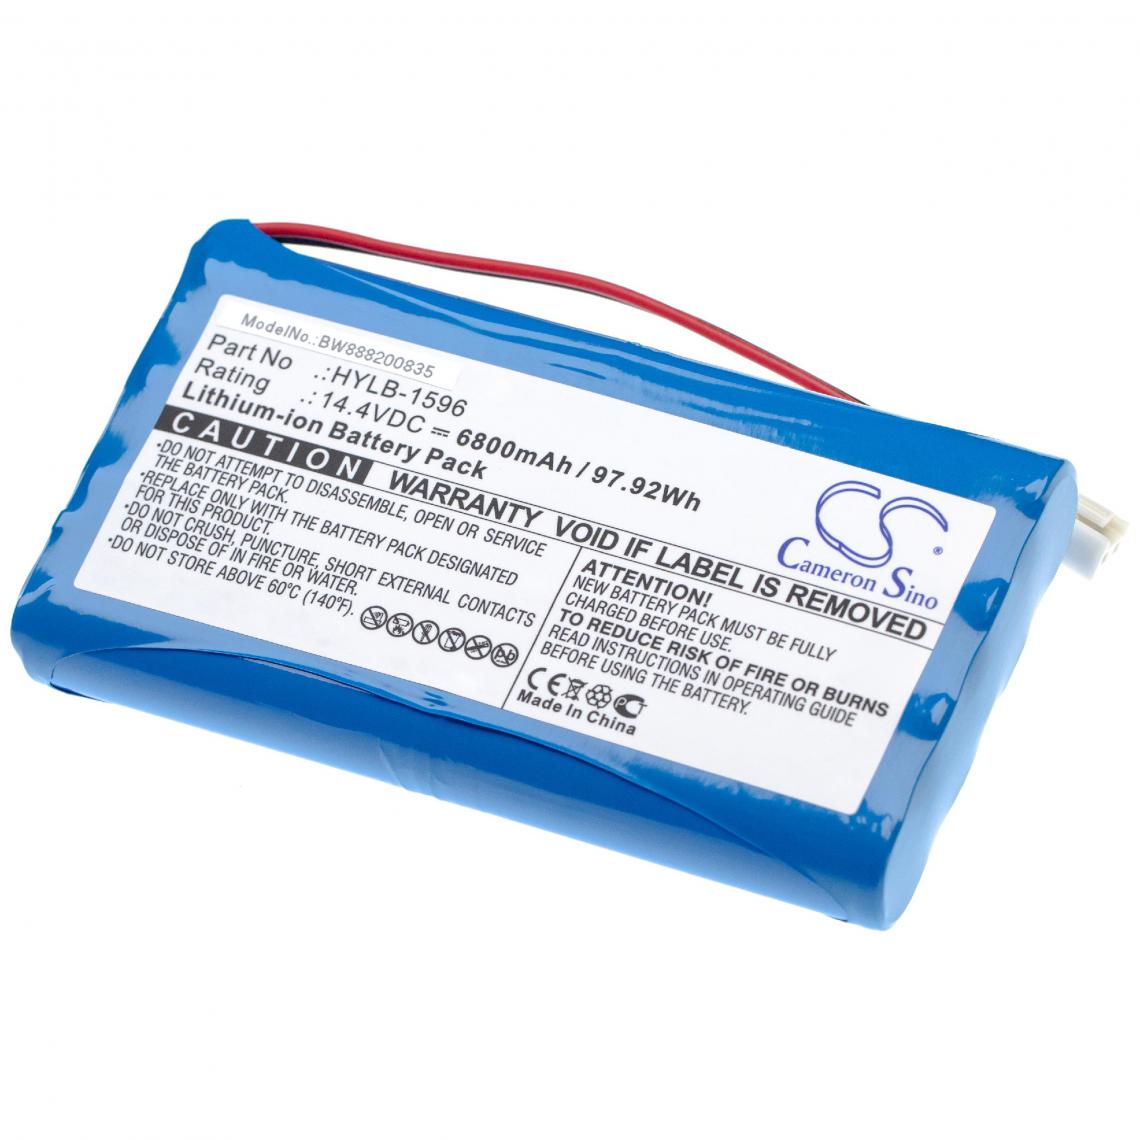 Vhbw - vhbw batterie remplace Biocare HYLB-1596 pour appareil de médecine comme èlectrocardiographie (6800mAh, 14.4V, Li-Ion) - Piles spécifiques